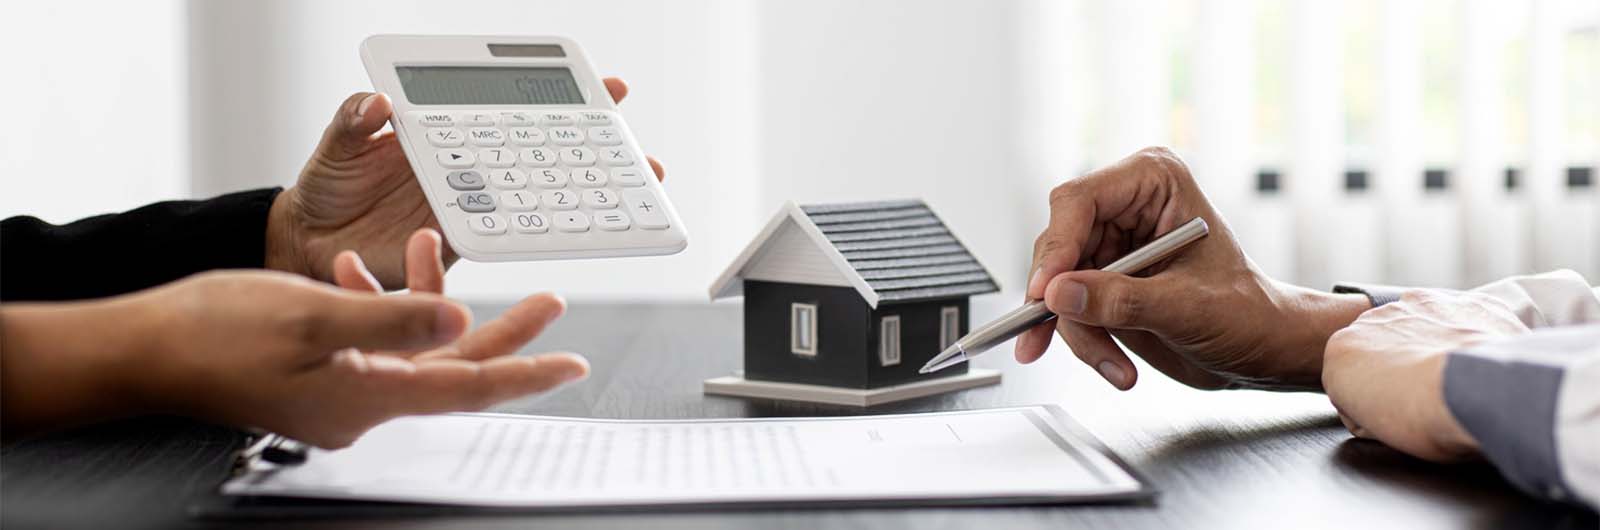 Calcul de la durée de votre emprunt immobilier - Pros.delubac